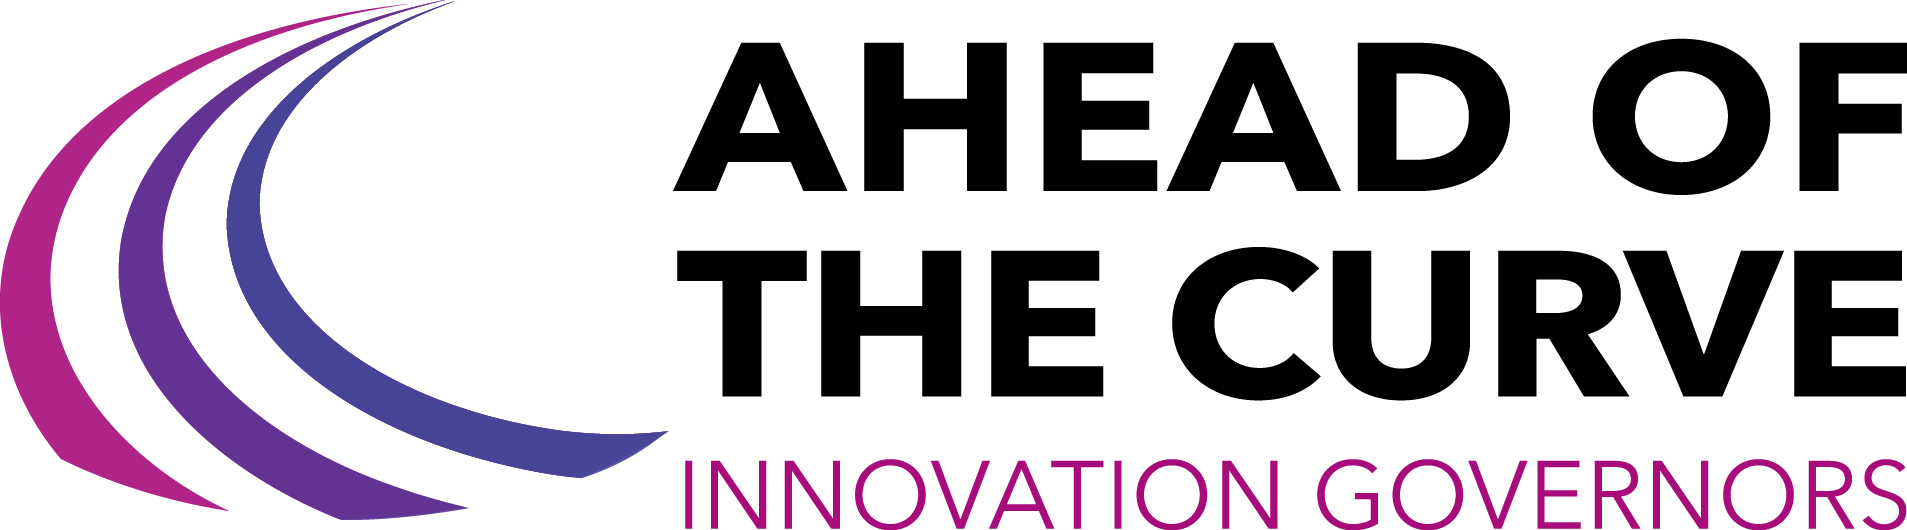 Governor Logo - NGA – Ahead of the Curve